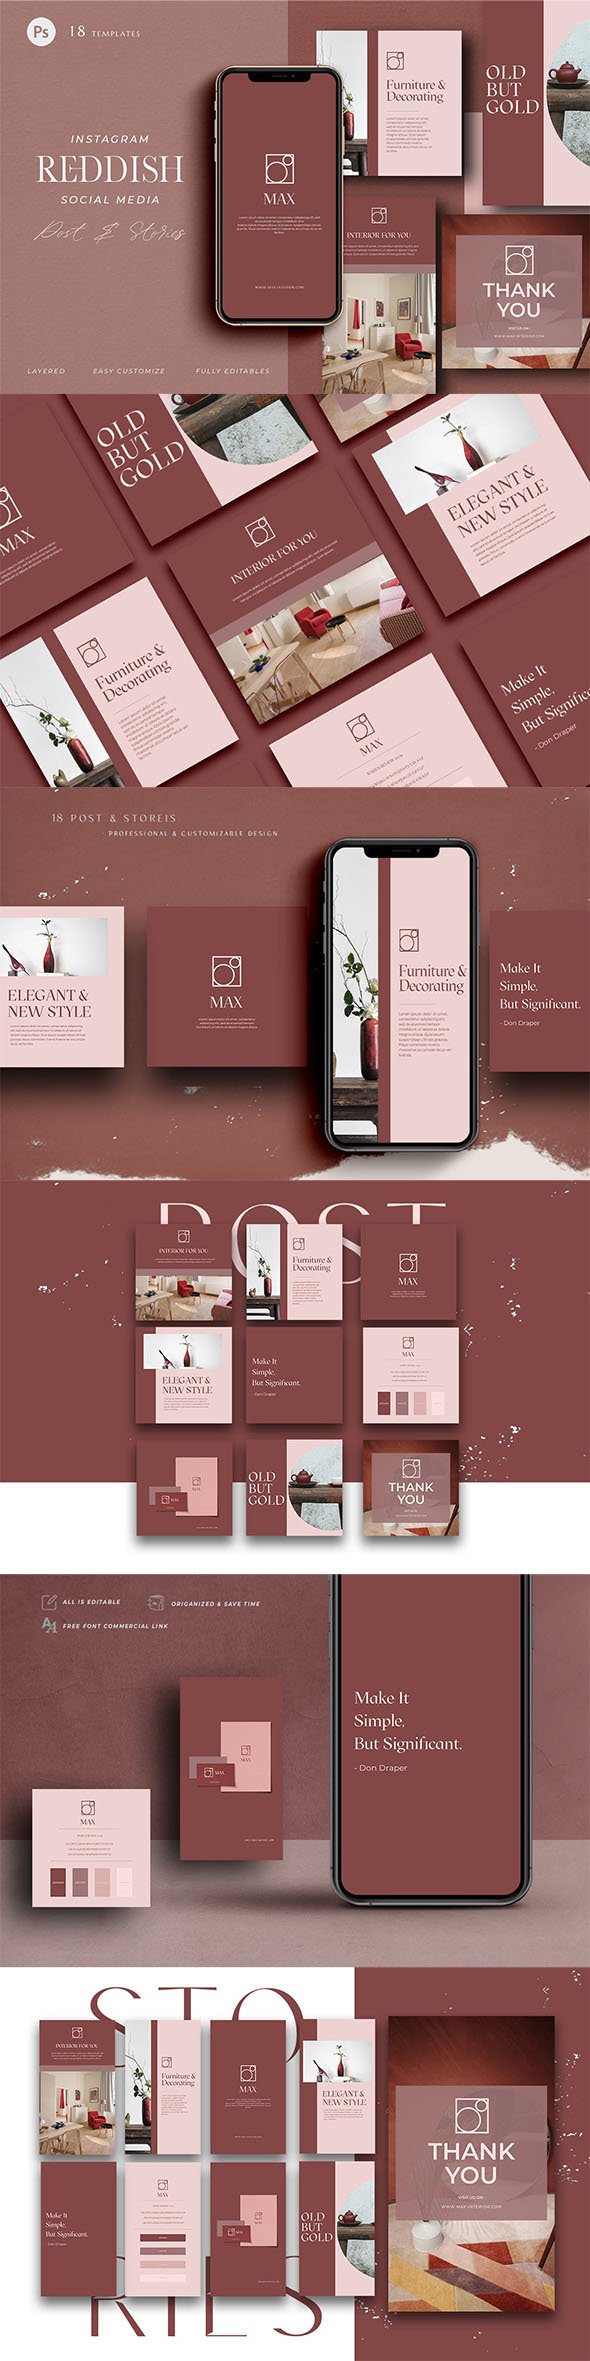 Interior Designer Company - Instagram Pack